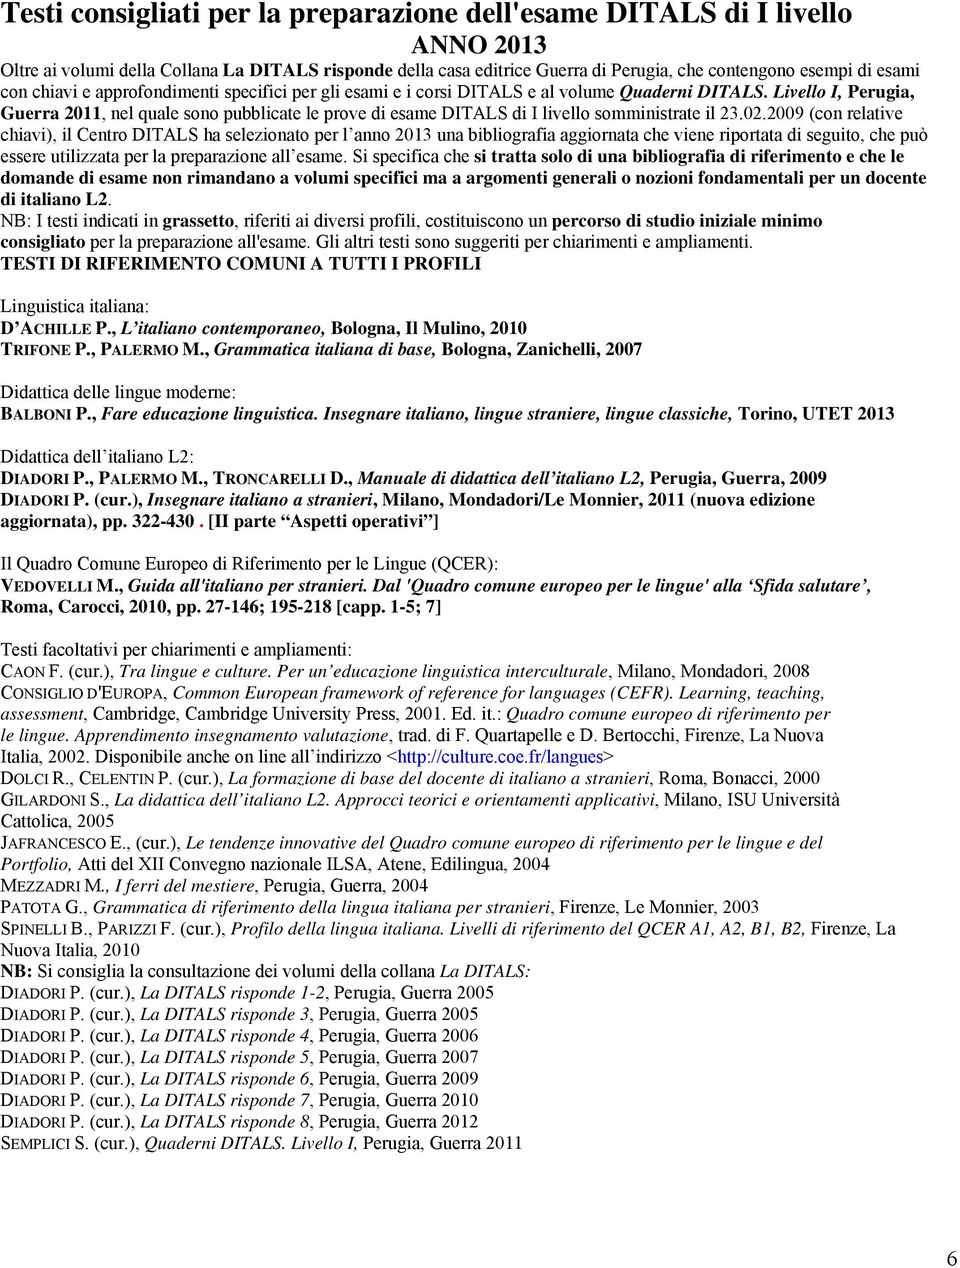 Livello I, Perugia, Guerra 2011, nel quale sono pubblicate le prove di esame DITALS di I livello somministrate il 23.02.